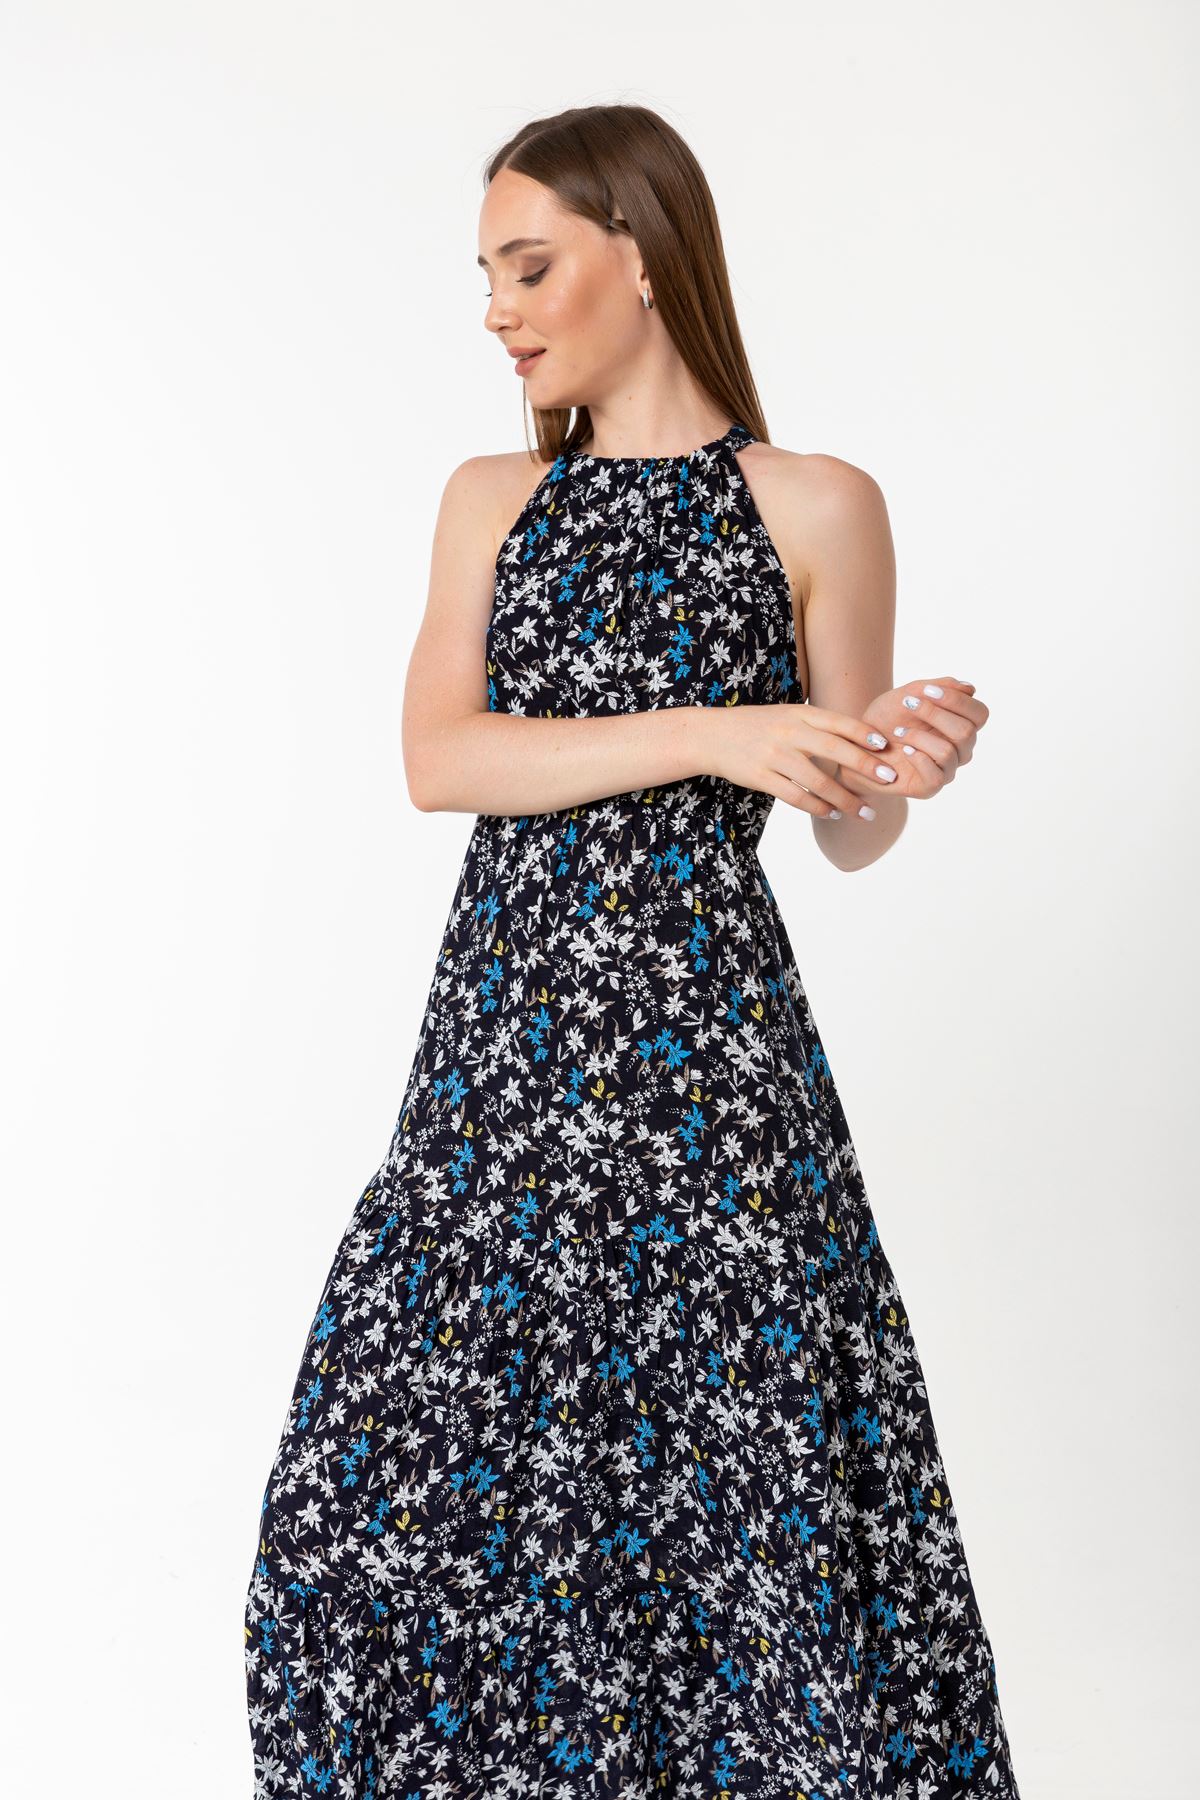 Viscose Fabric Queen Anna Neck Crispy Floral Print Women Dress - Navy Blue 